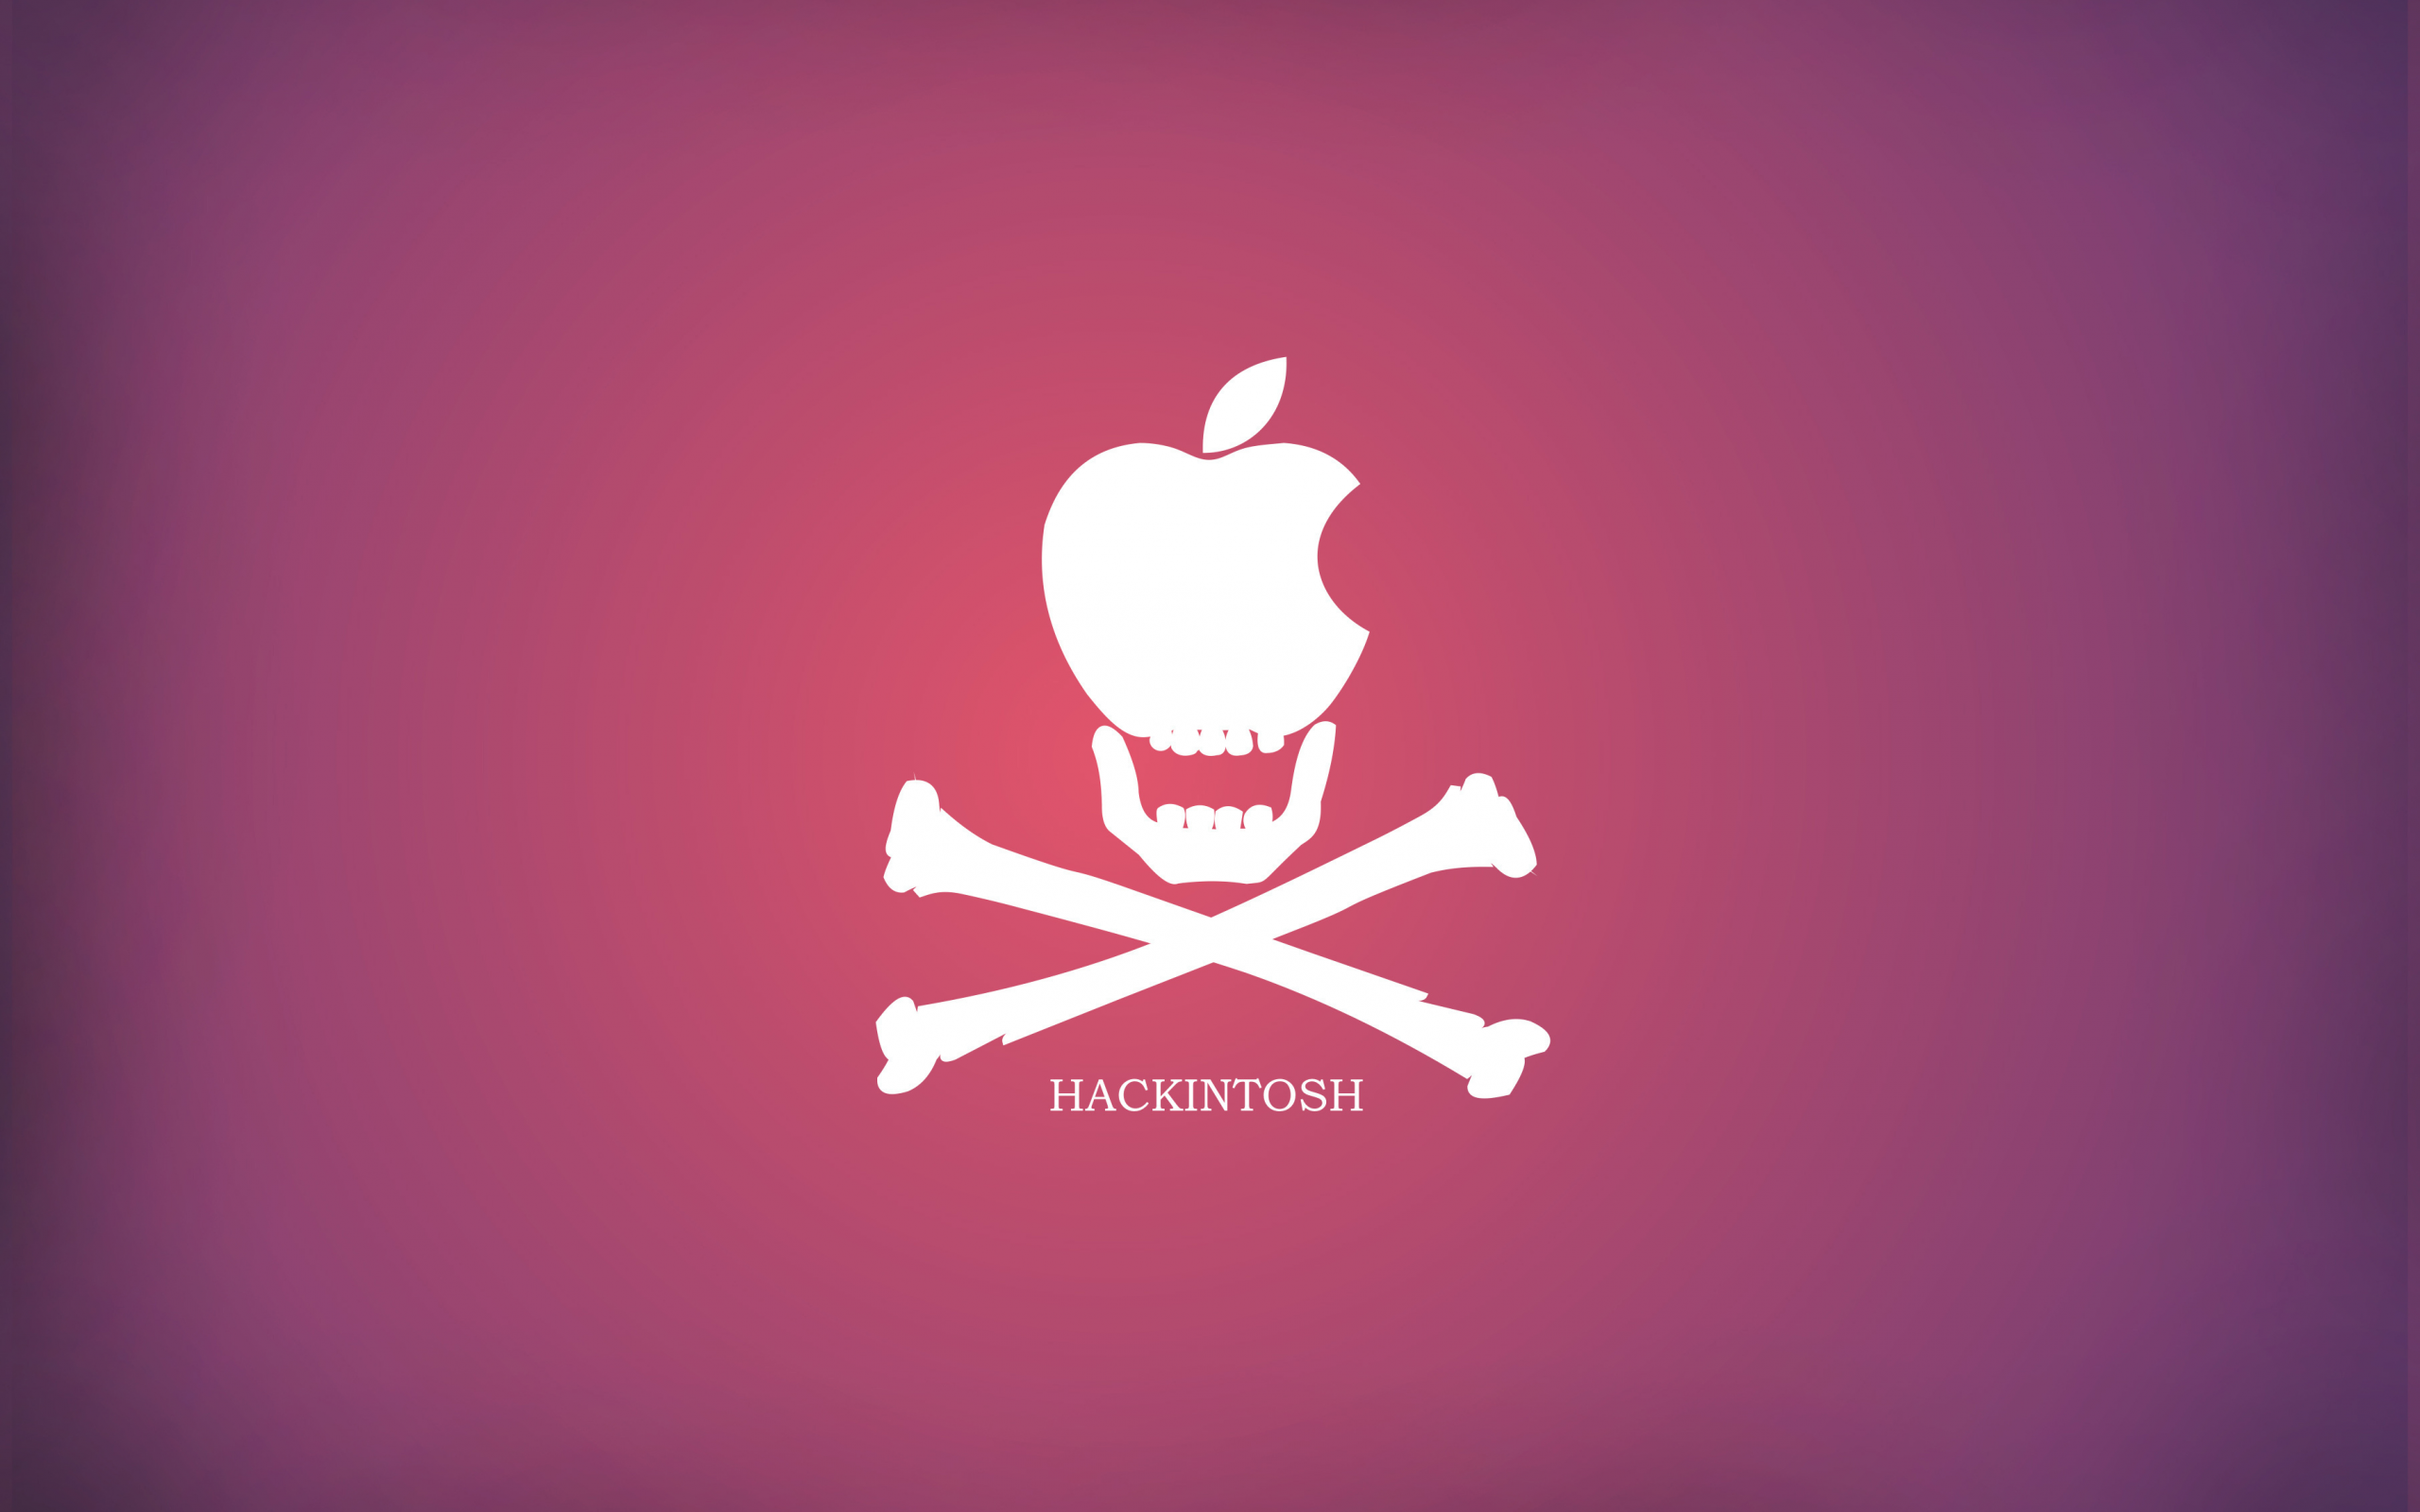 Хакинтош, красный, кости, пират, Hackintosh, минимализм, мини, яблоко, фиолетовый, череп, apple